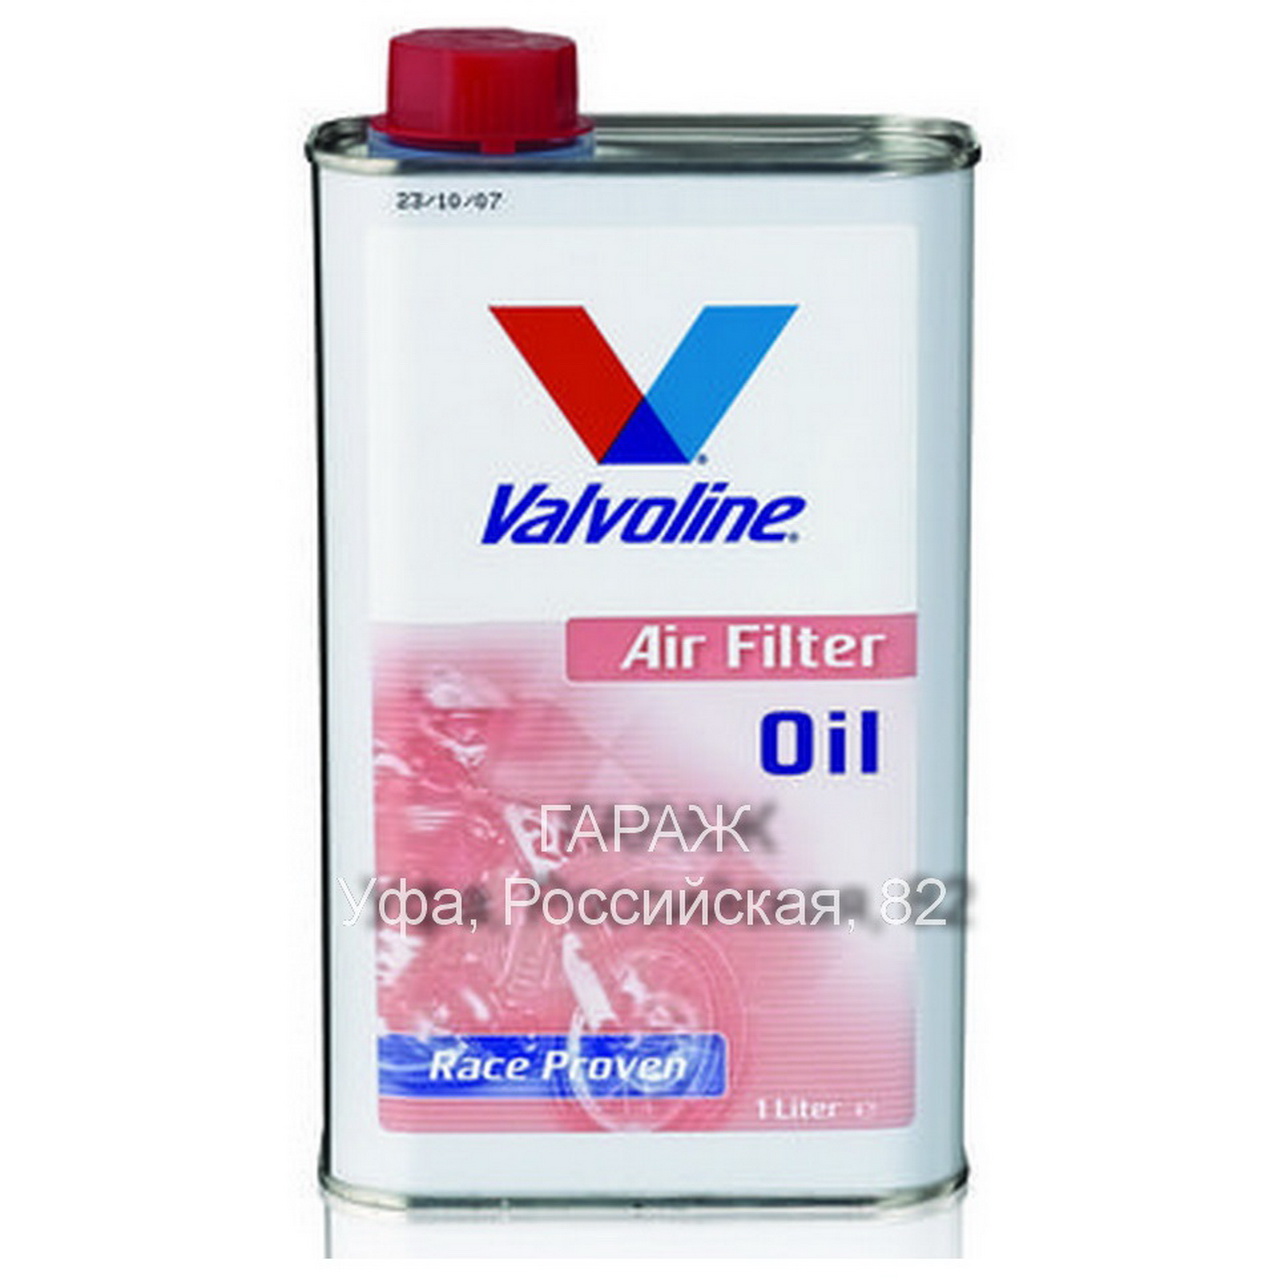 Пропитка для воздушного фильтра мотоцикла. Air Filter Oil 1л. Valvoline ve885. Ve885 Valvoline. Пропитка для фильтров мотоцикла Air Filter. Пропитка для фильтра Вальволин.